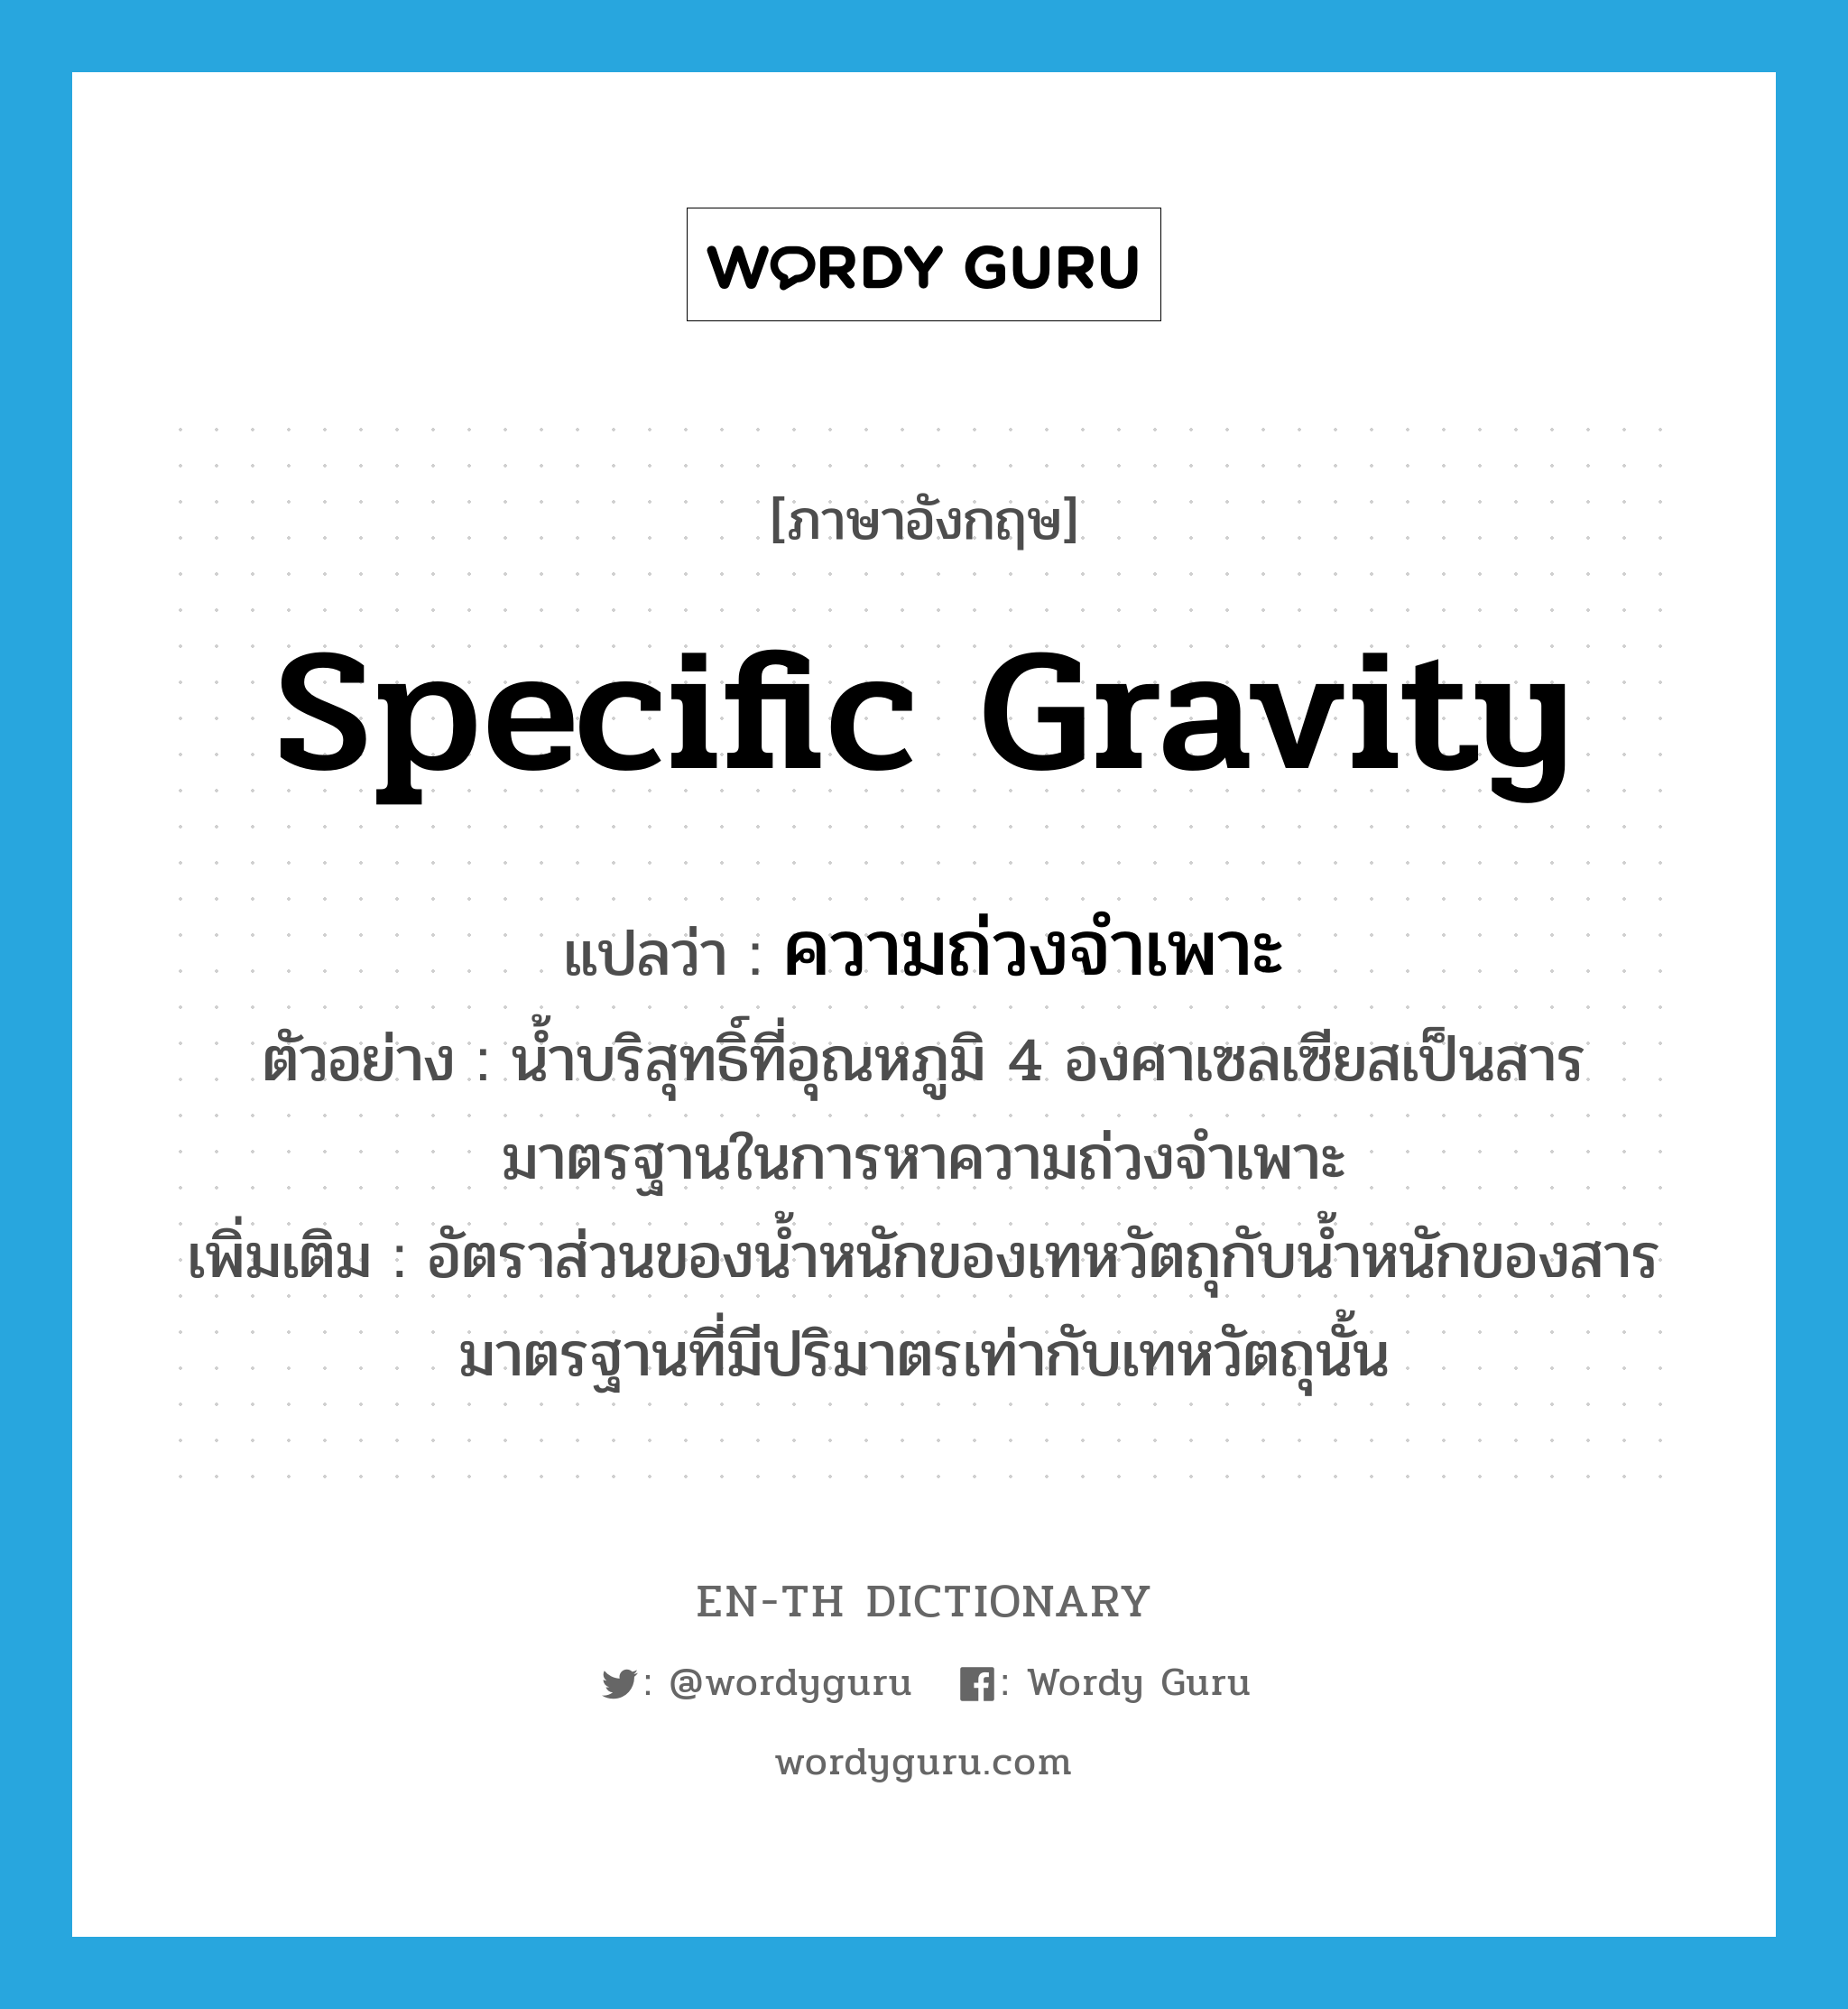 specific gravity แปลว่า?, คำศัพท์ภาษาอังกฤษ specific gravity แปลว่า ความถ่วงจำเพาะ ประเภท N ตัวอย่าง น้ำบริสุทธิ์ที่อุณหภูมิ 4 องศาเซลเซียสเป็นสารมาตรฐานในการหาความถ่วงจำเพาะ เพิ่มเติม อัตราส่วนของน้ำหนักของเทหวัตถุกับน้ำหนักของสารมาตรฐานที่มีปริมาตรเท่ากับเทหวัตถุนั้น หมวด N